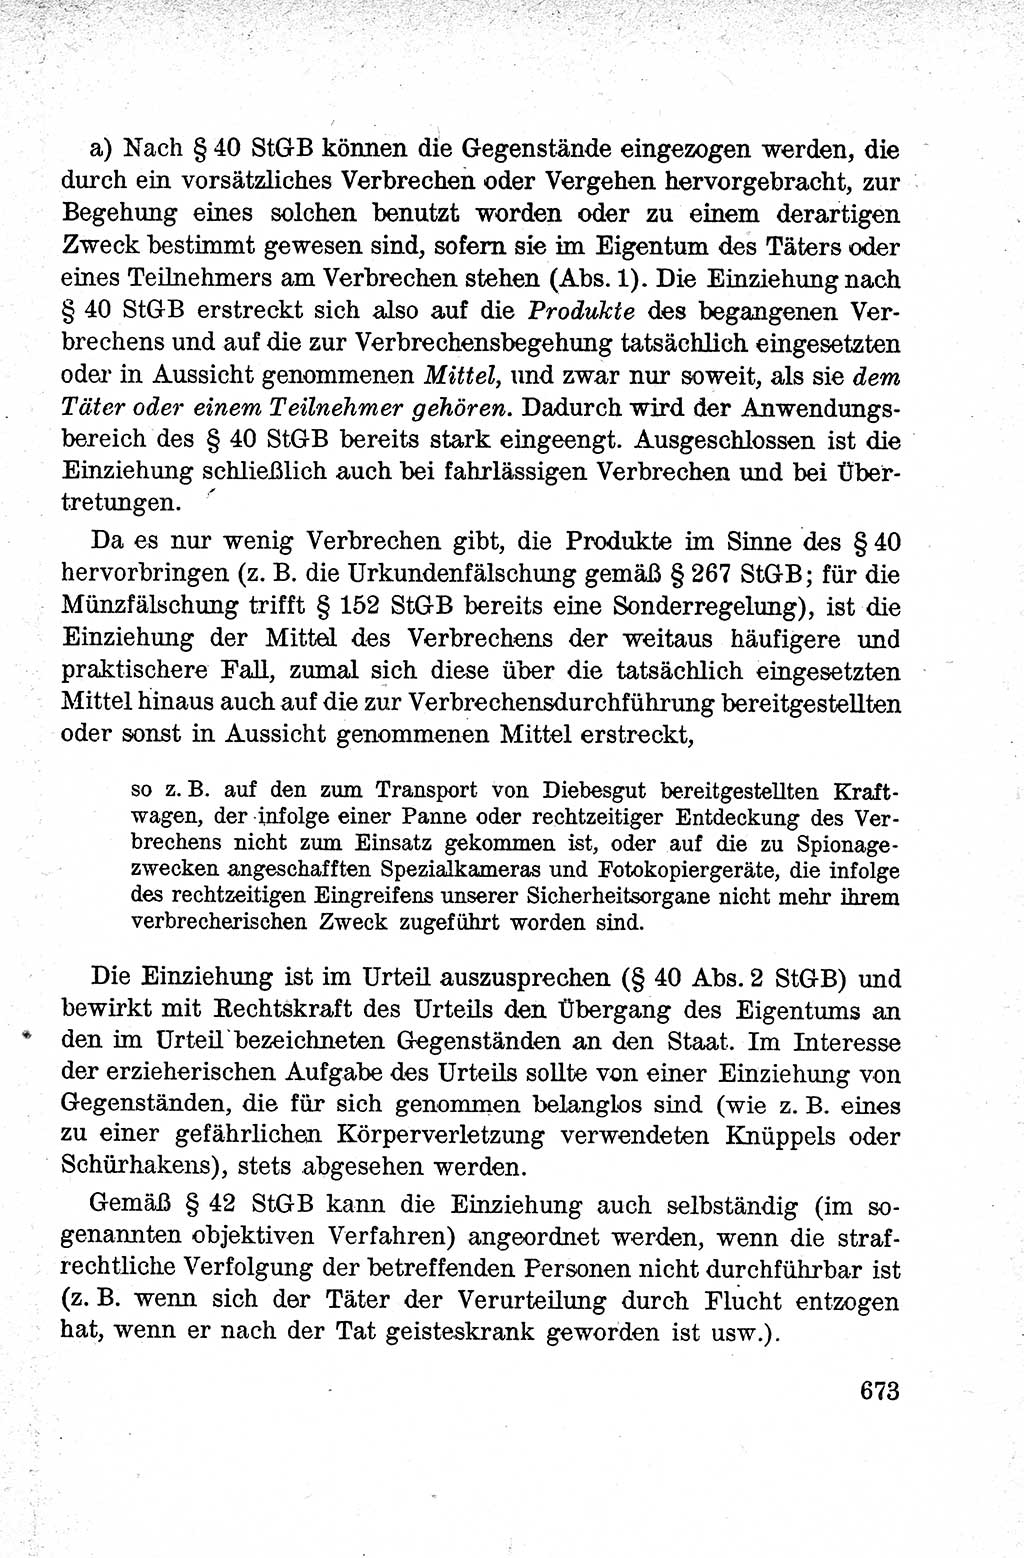 Lehrbuch des Strafrechts der Deutschen Demokratischen Republik (DDR), Allgemeiner Teil 1959, Seite 673 (Lb. Strafr. DDR AT 1959, S. 673)